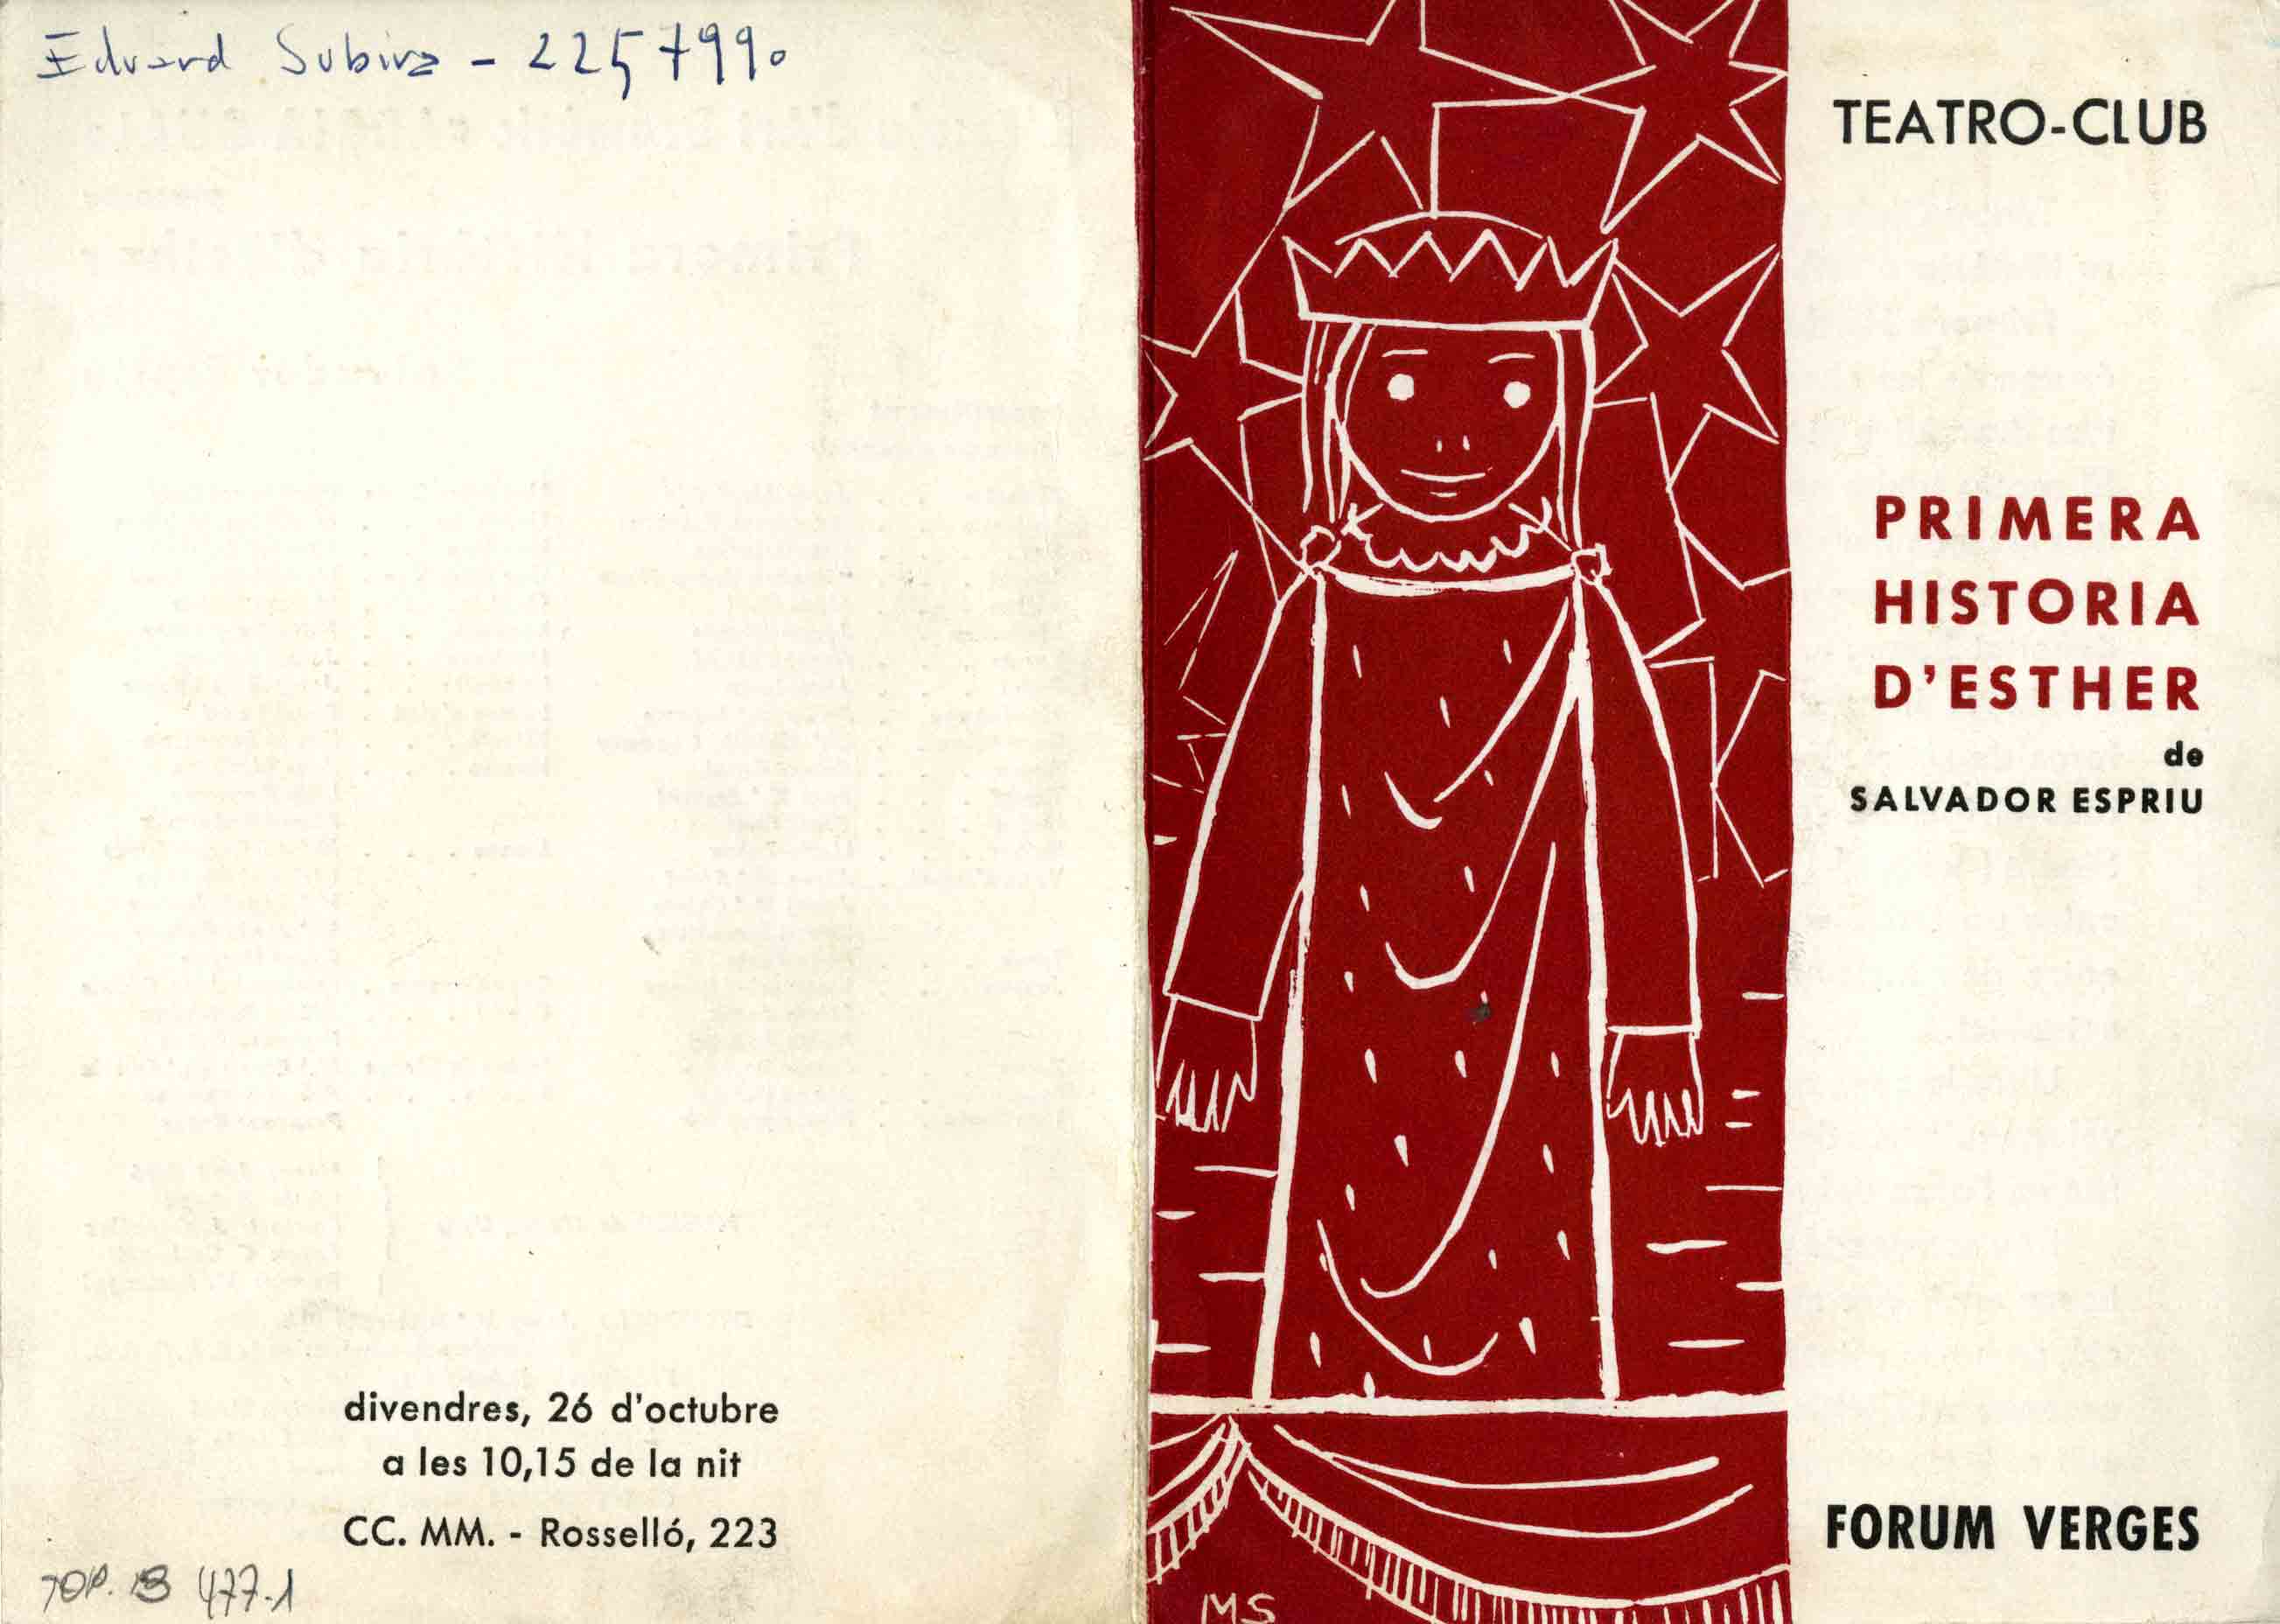 Programa de mà. Primera història d'Esther. Teatre-Club. 1962